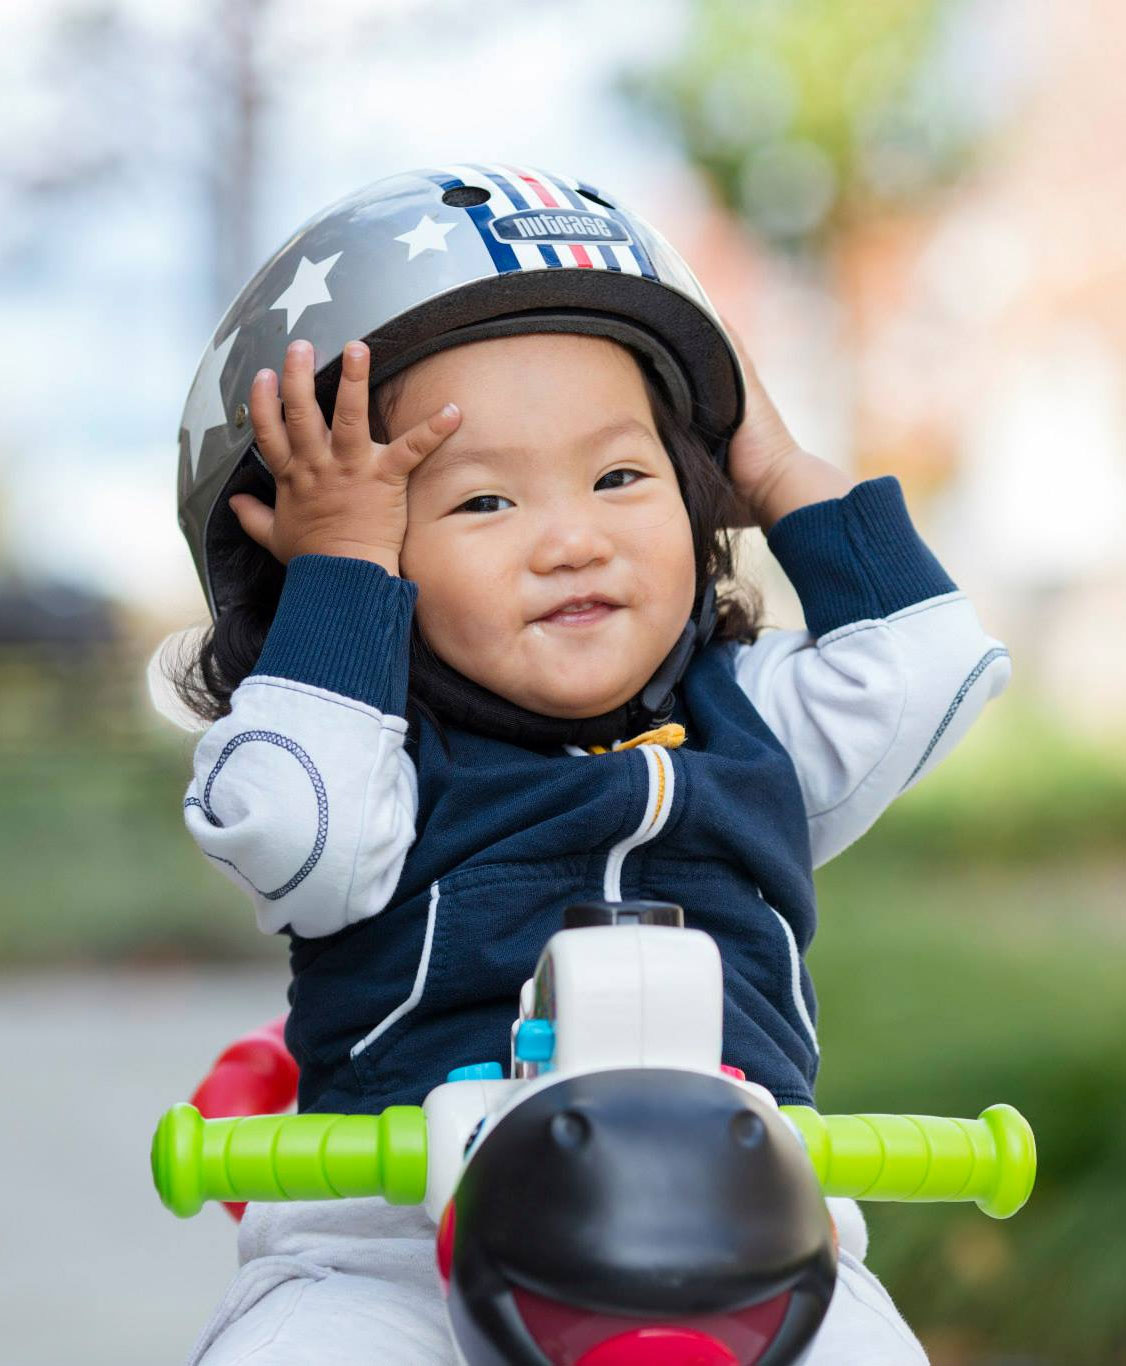 infant bike helmet